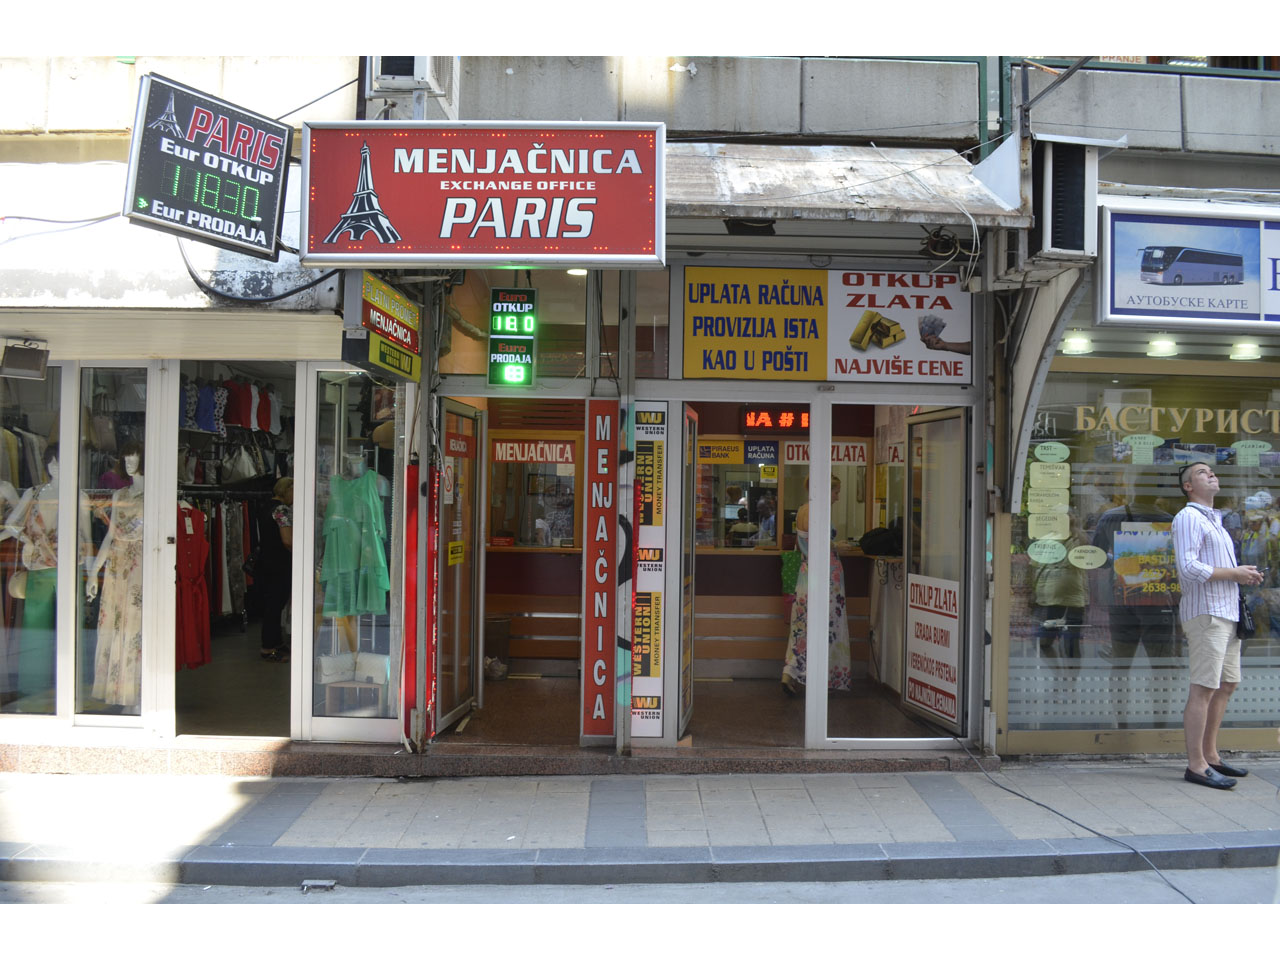 Photo 2 - PARIS EXCHANGE OFFICE Exchange office Belgrade